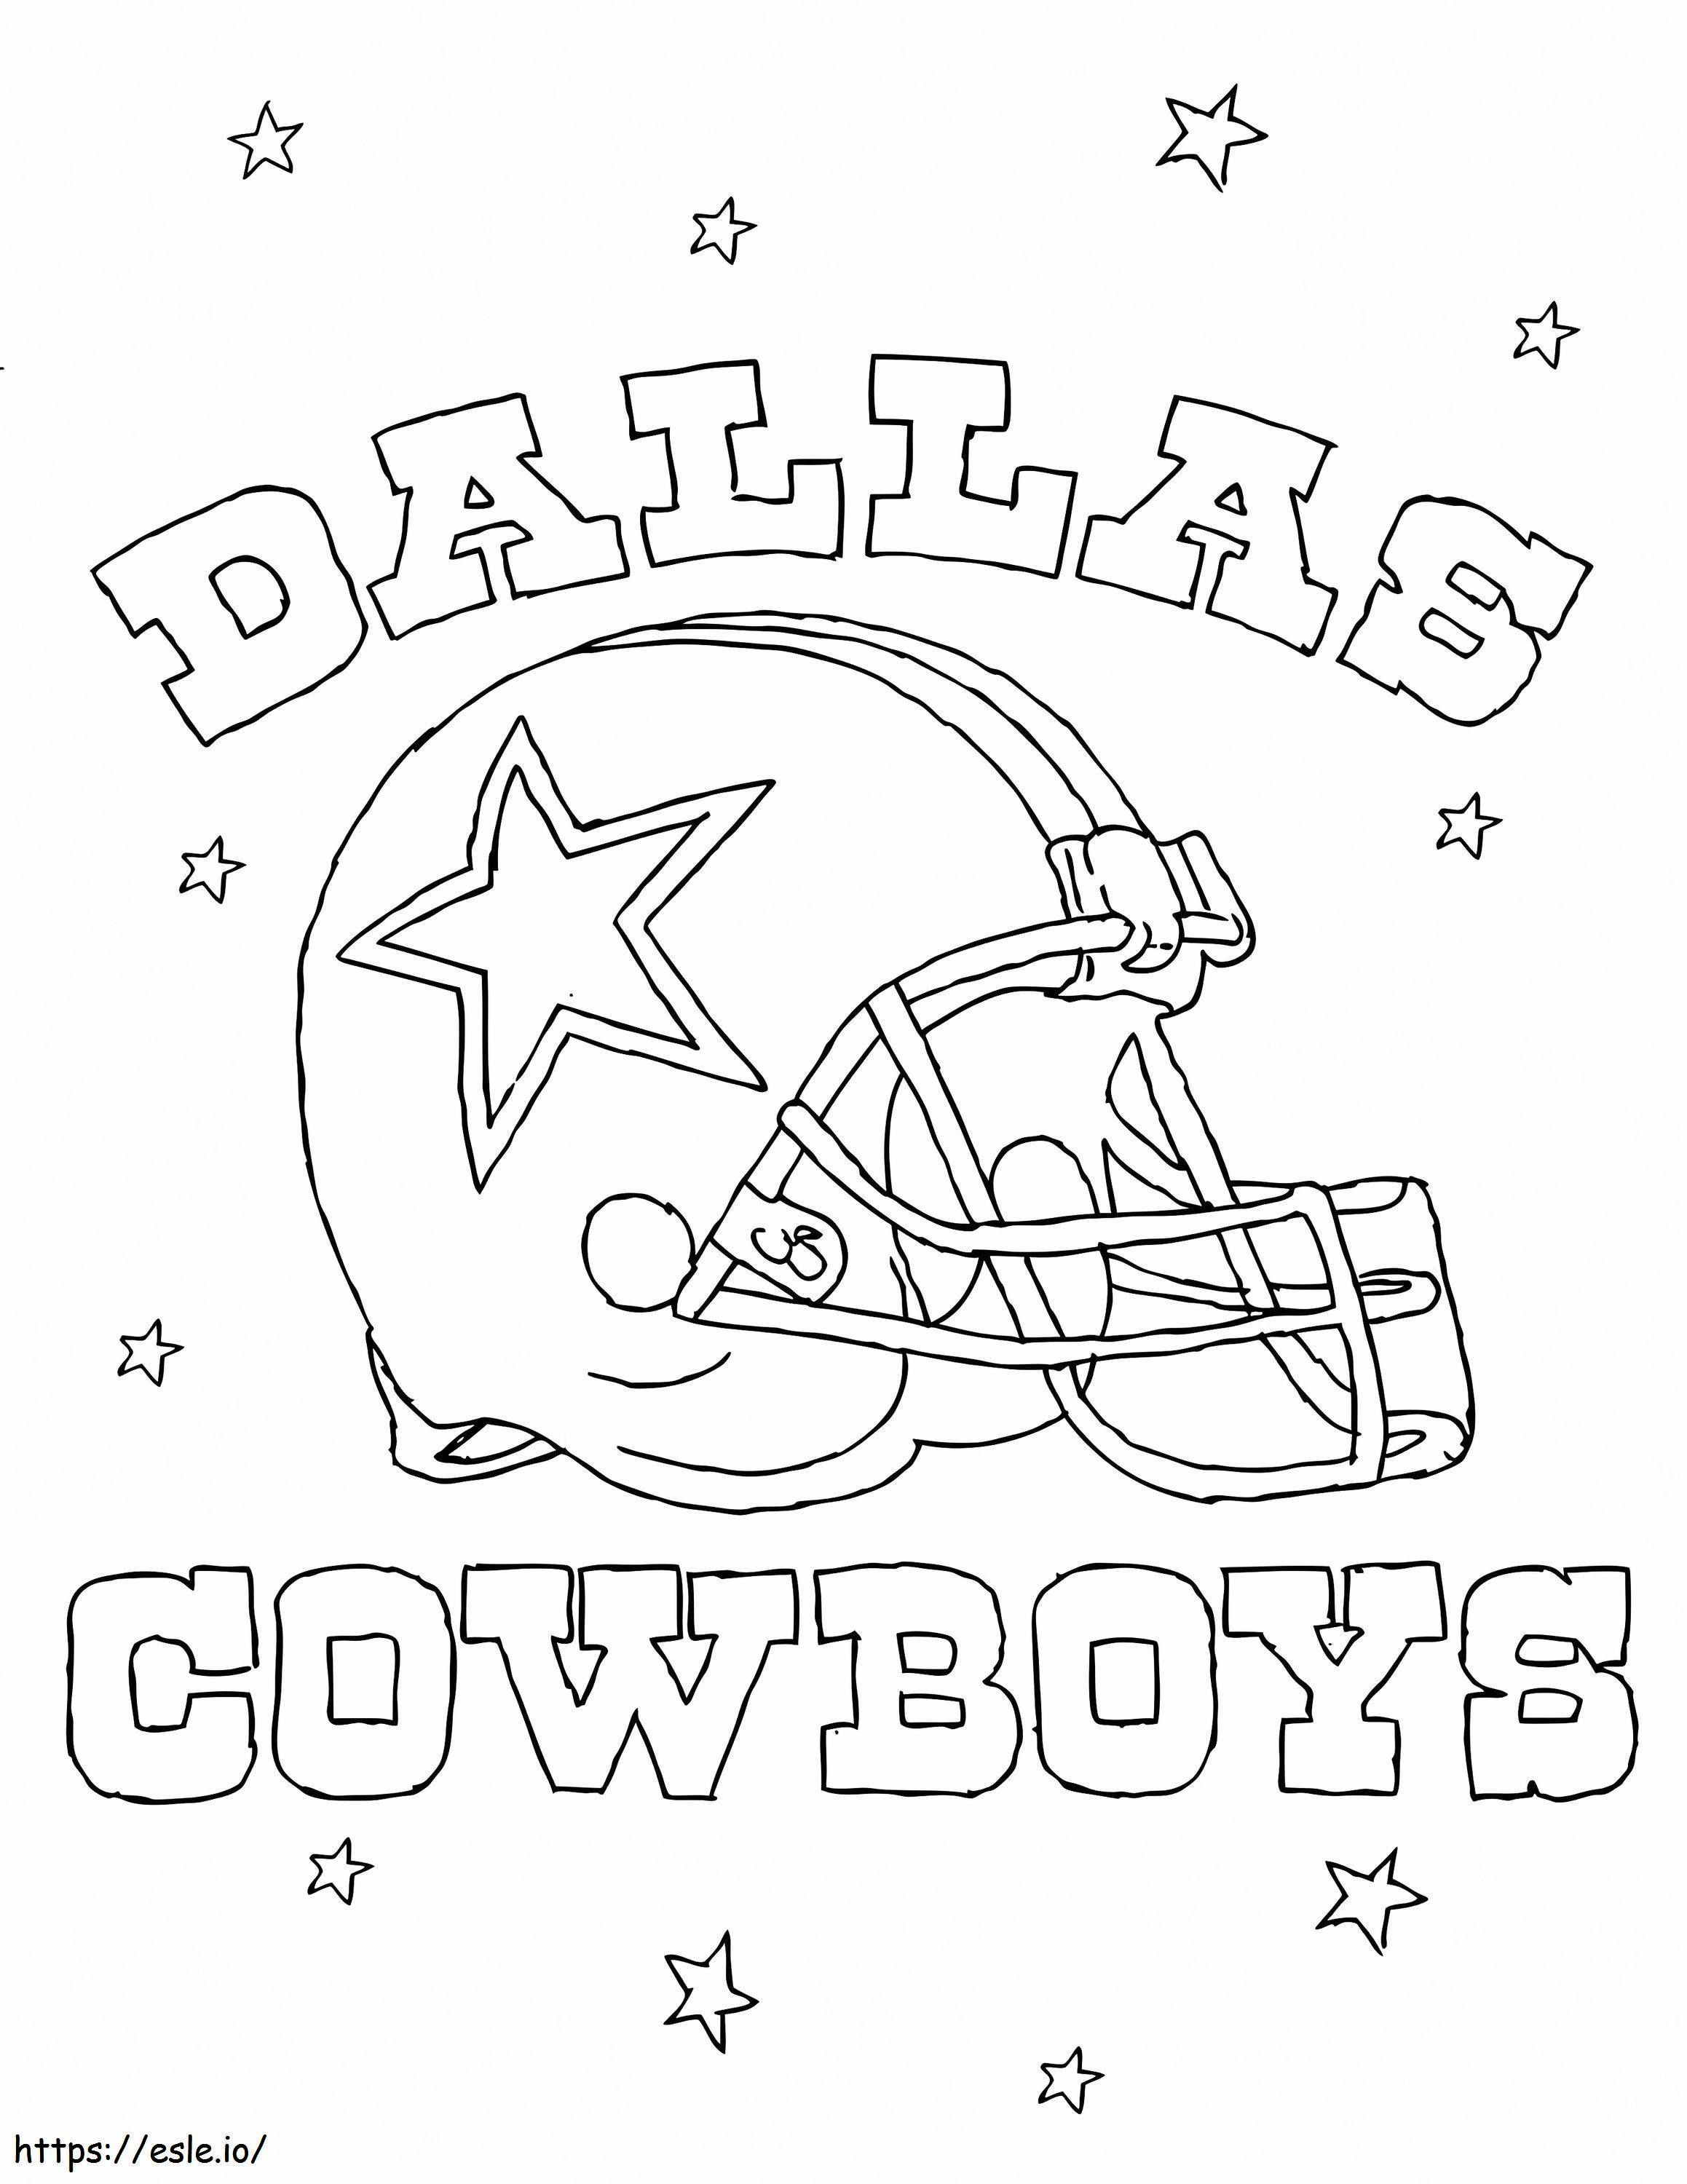 Dallas Cowboys de colorat